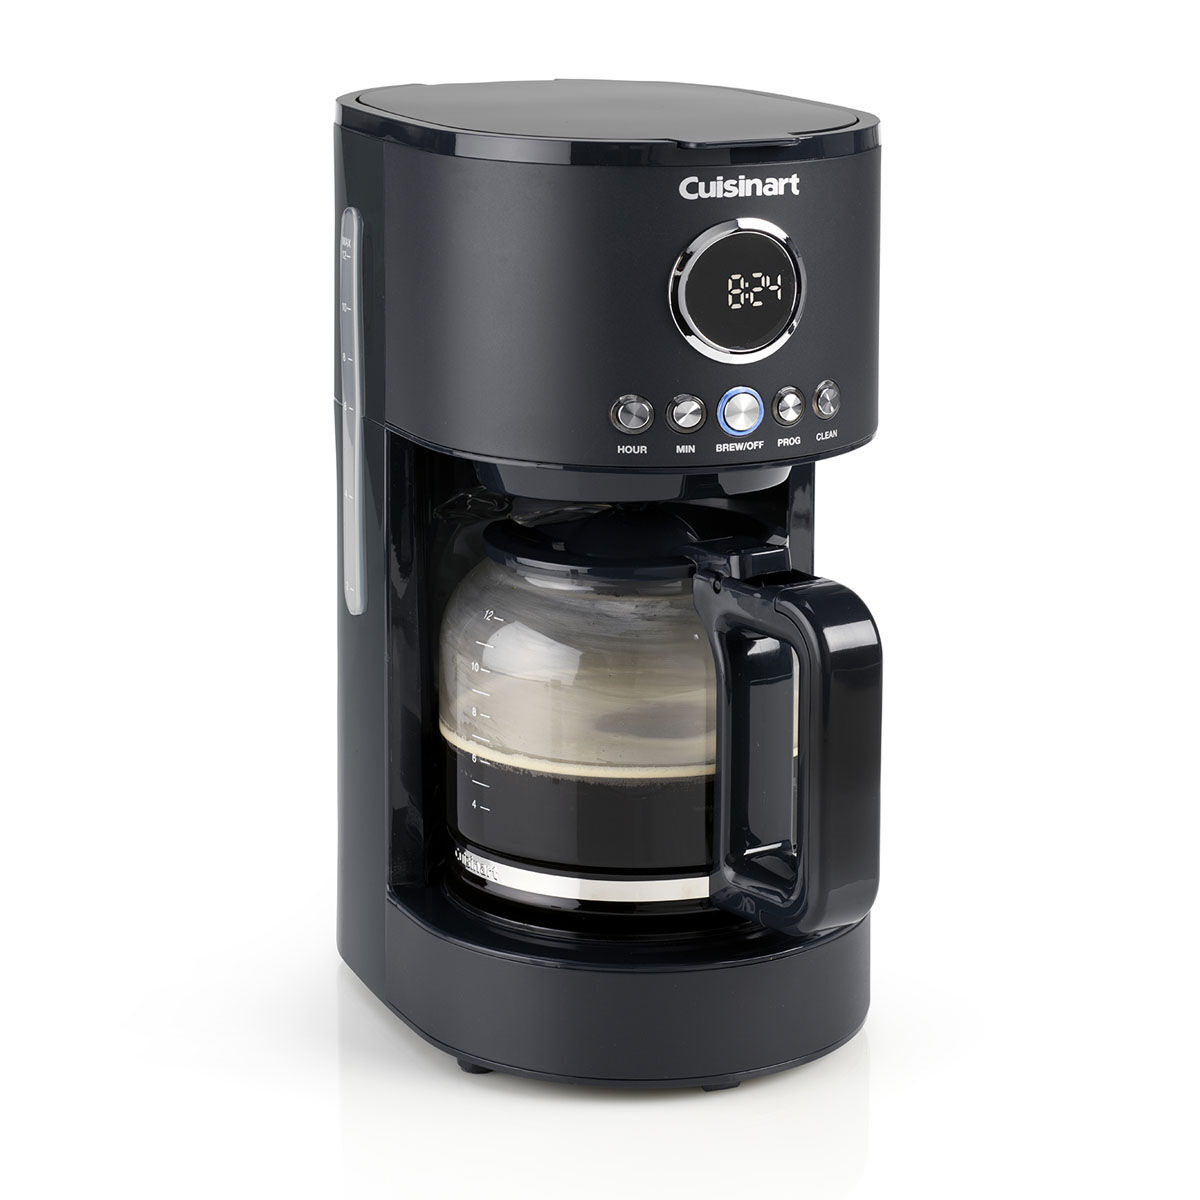 Black & Decker Dishwasher Safe Parts Filter Coffee Machines